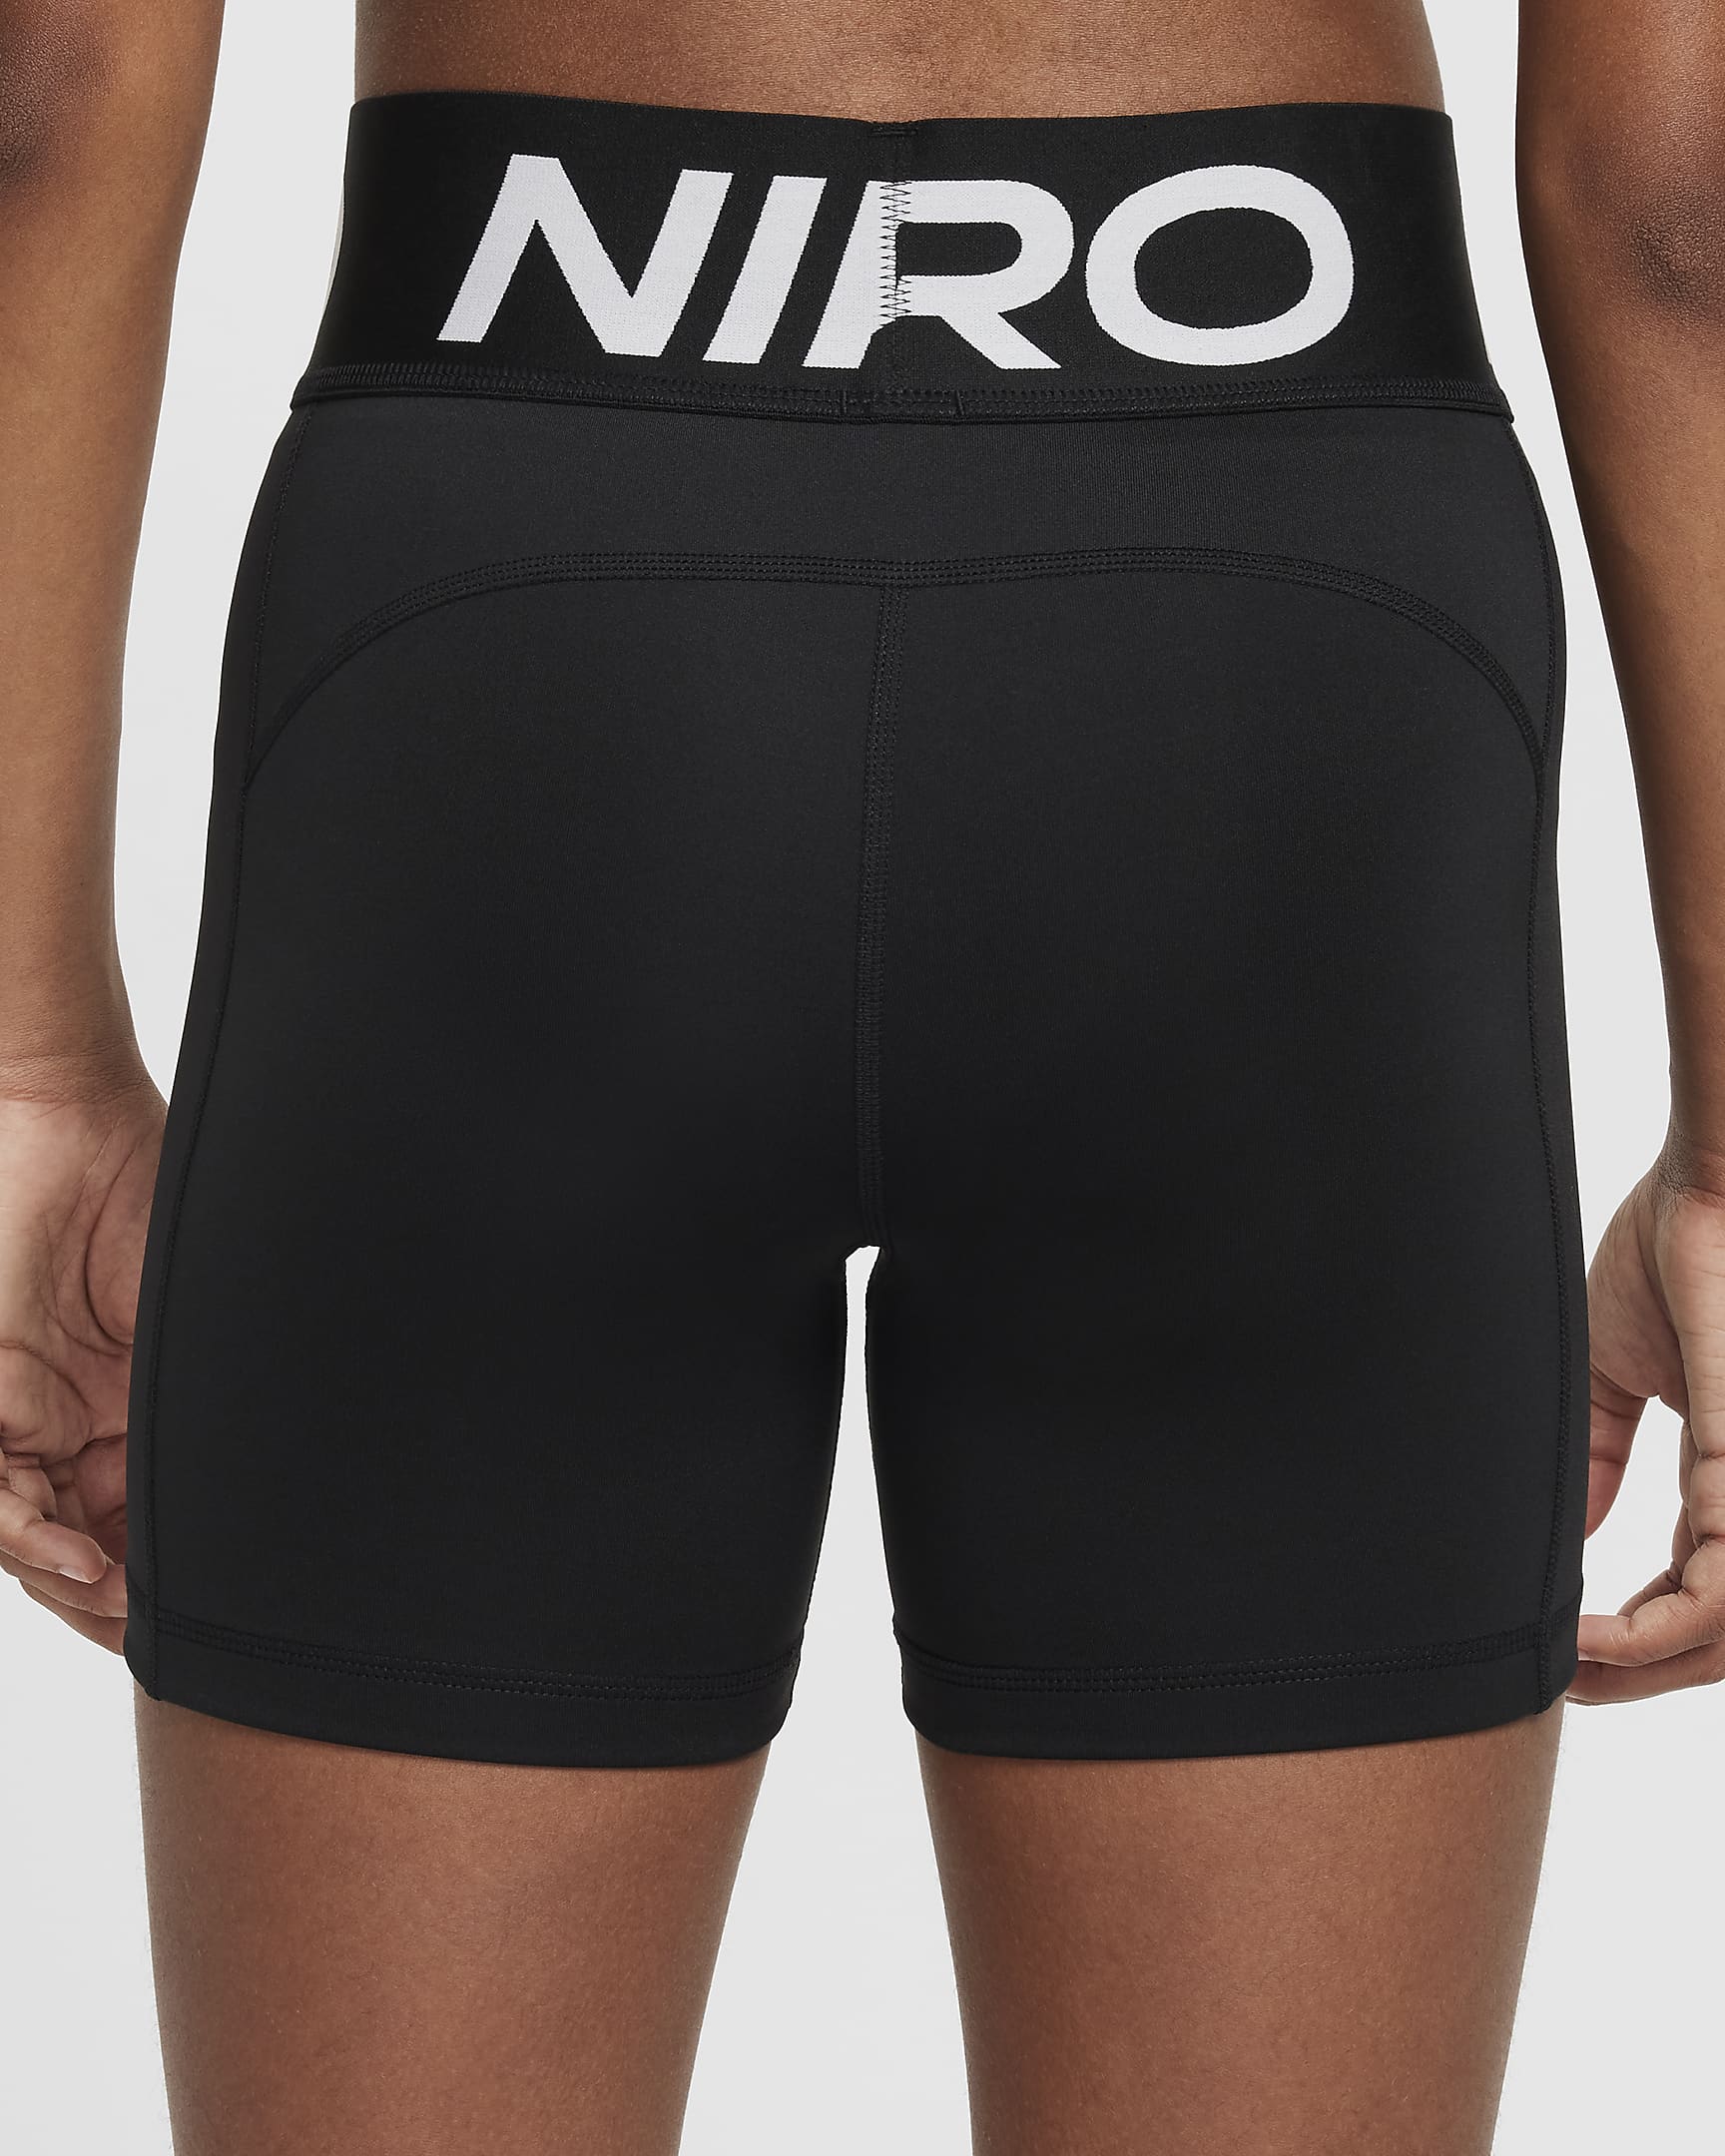 Nike Pro Girls' Dri-FIT Shorts - Black/White